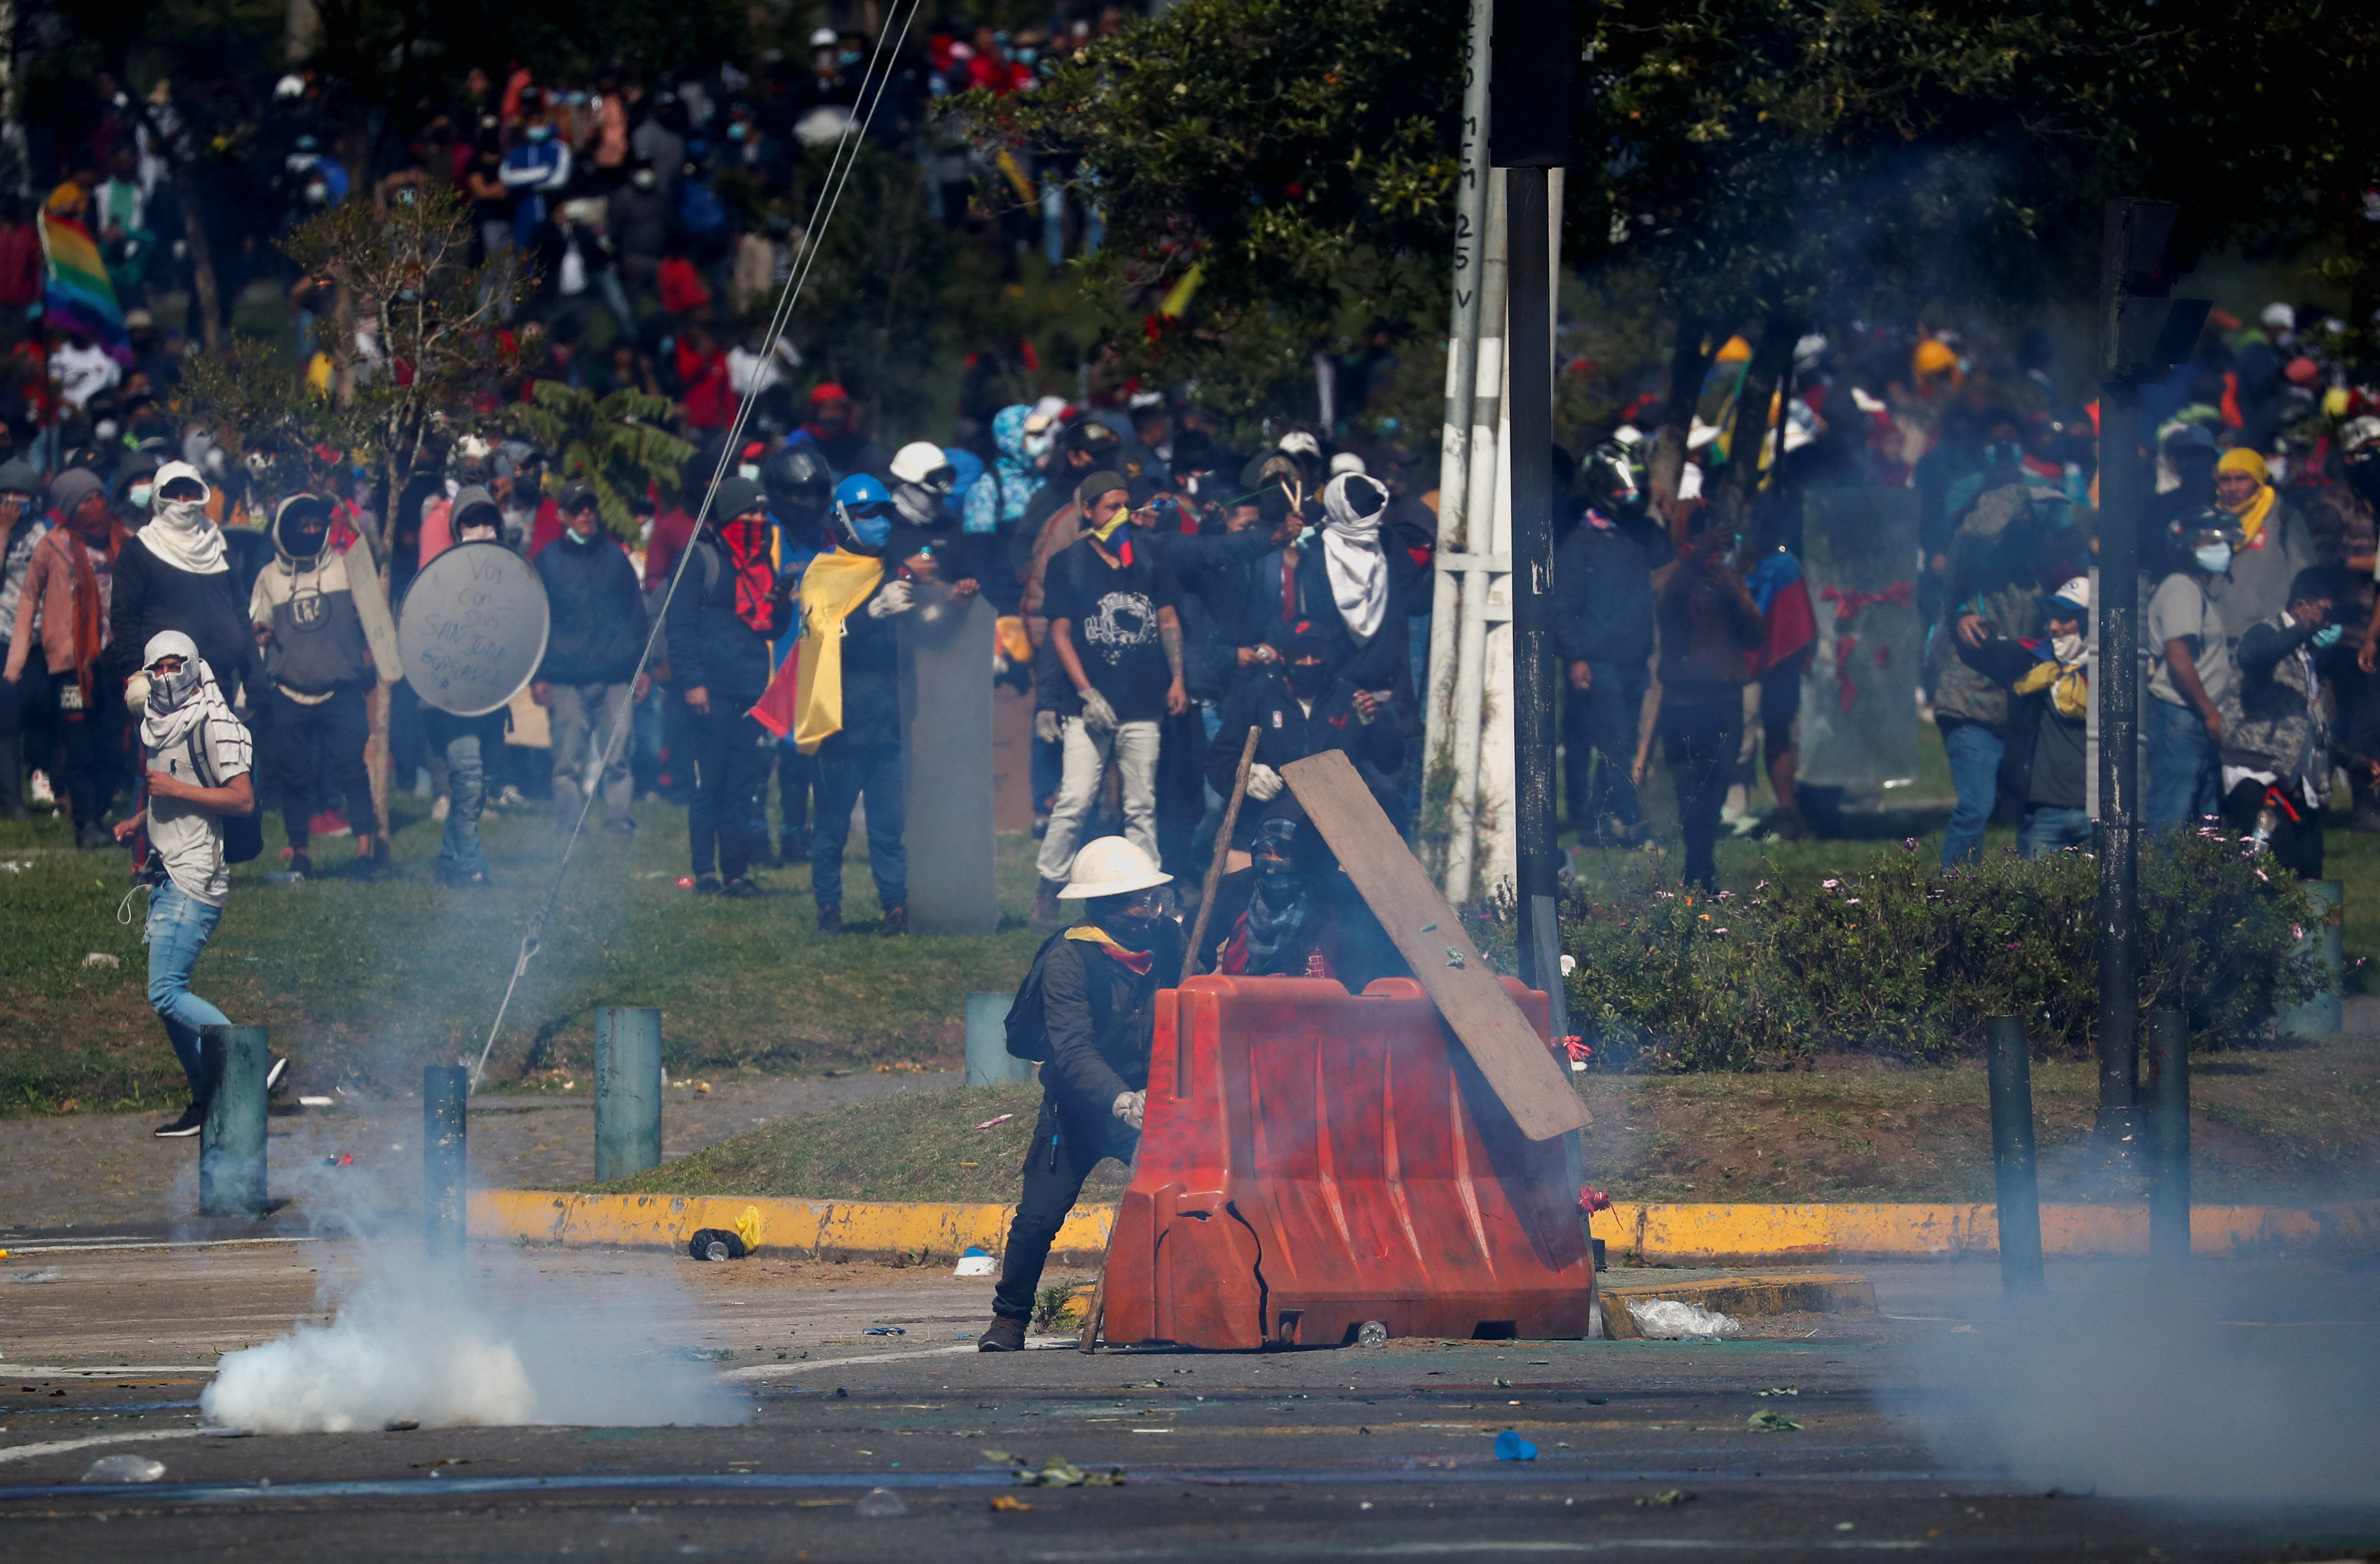 La policía arrojó gases lacrimógenos contra los manifestantes para evitar que ingresaran al edificio del Congreso de Ecuador (REUTERS/Adriano Machado)